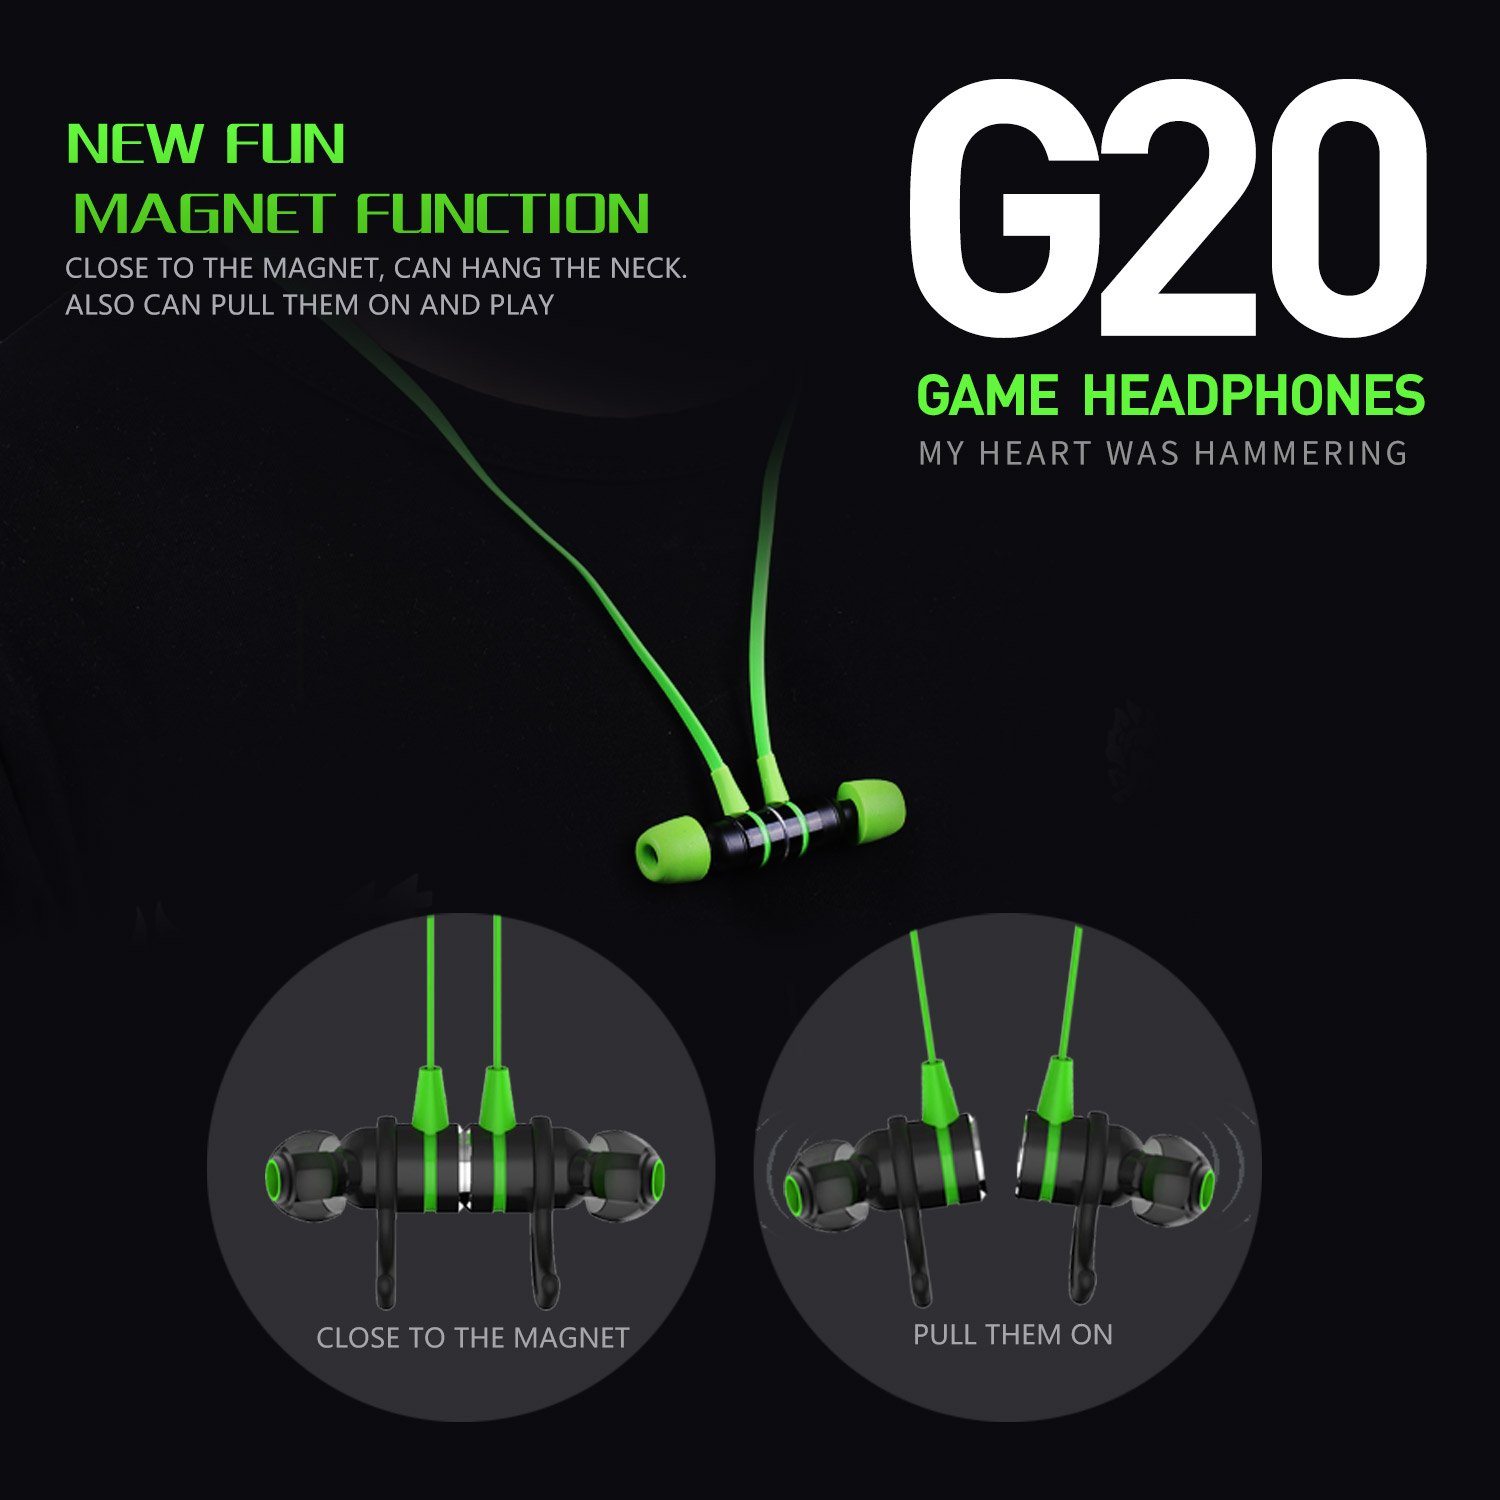 Tai nghe Game thủ, tai nghe in ear gaming Plextone G20 mẫu mới 2019 dây dẹt chống rối, Jack 3.5mm chữ L chống gẫy, Microphone Built in Filter Circuit – Hàng Chính Hãng.